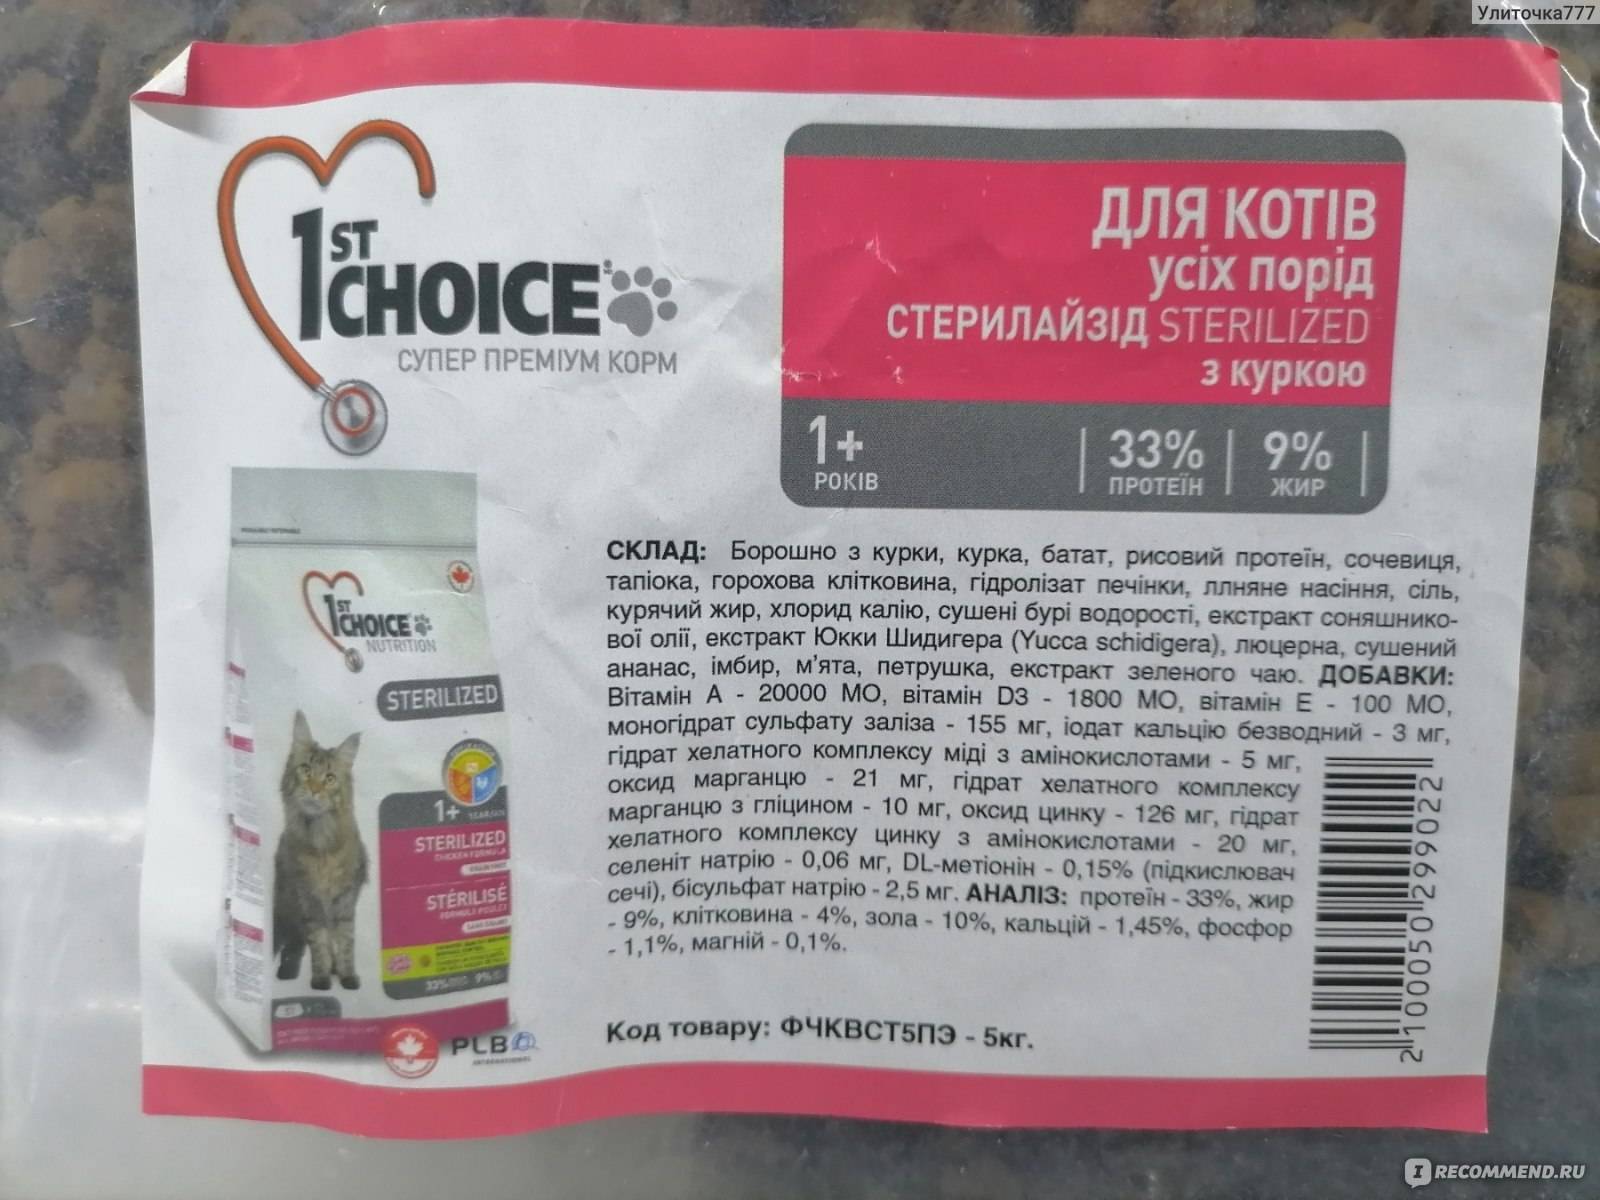 1st choice (фест чойс): обзор корма для кошек, состав, отзывы